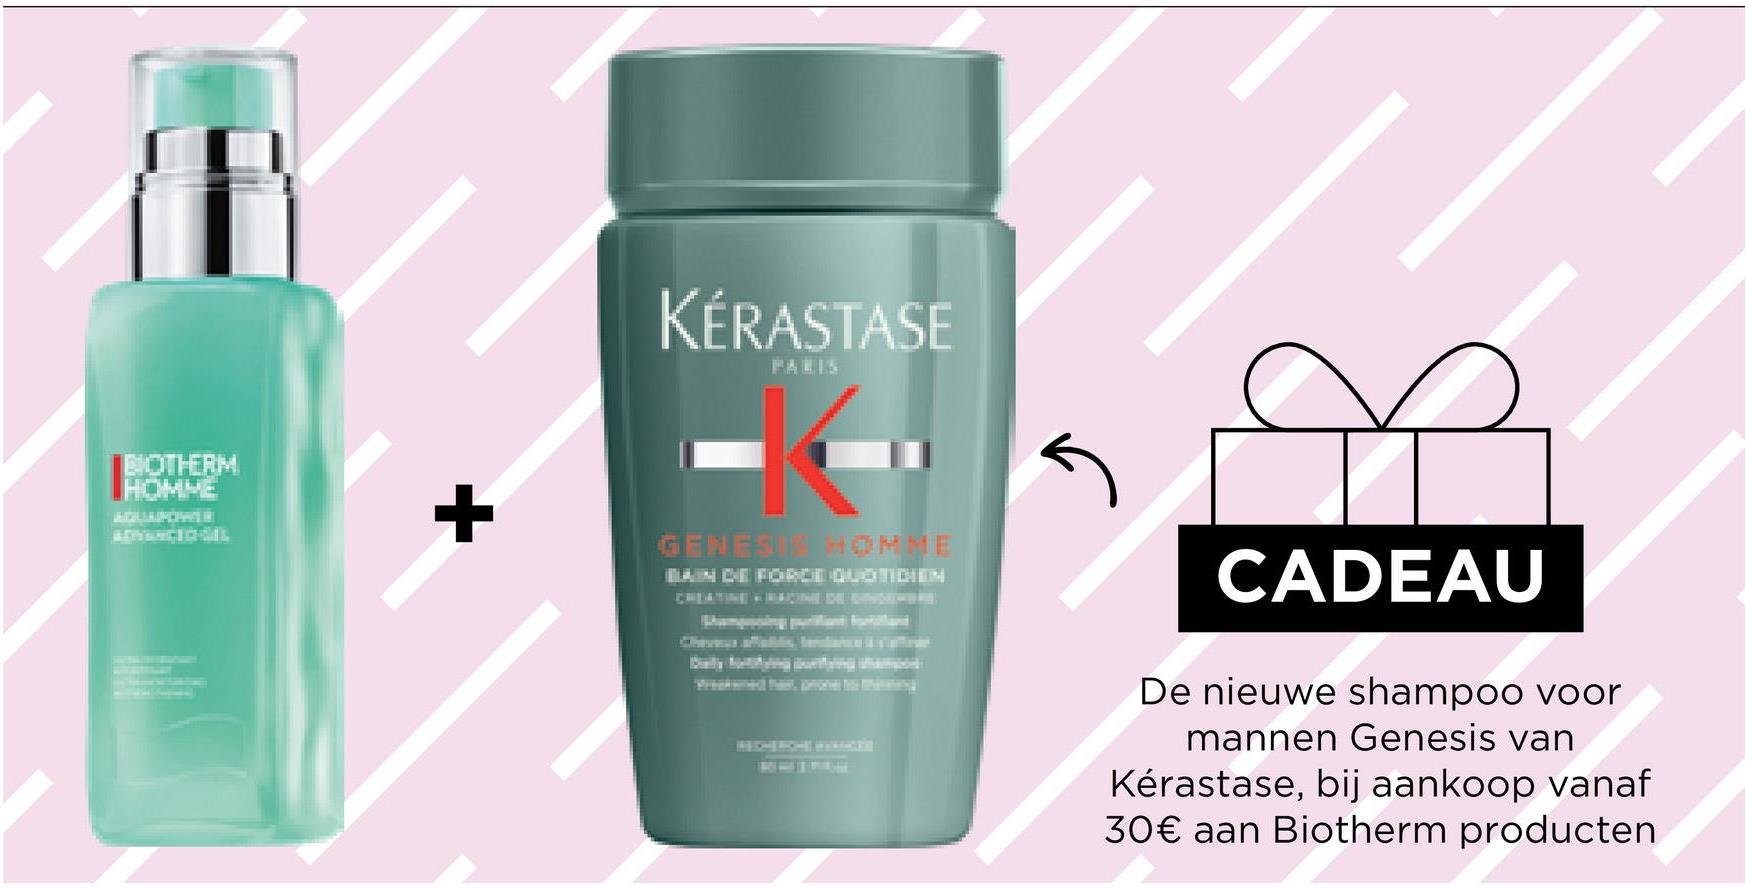 BIOTHERM
+
KÉRASTASE
PARIS
5
CADEAU
De nieuwe shampoo voor
mannen Genesis van
Kérastase, bij aankoop vanaf
30€ aan Biotherm producten